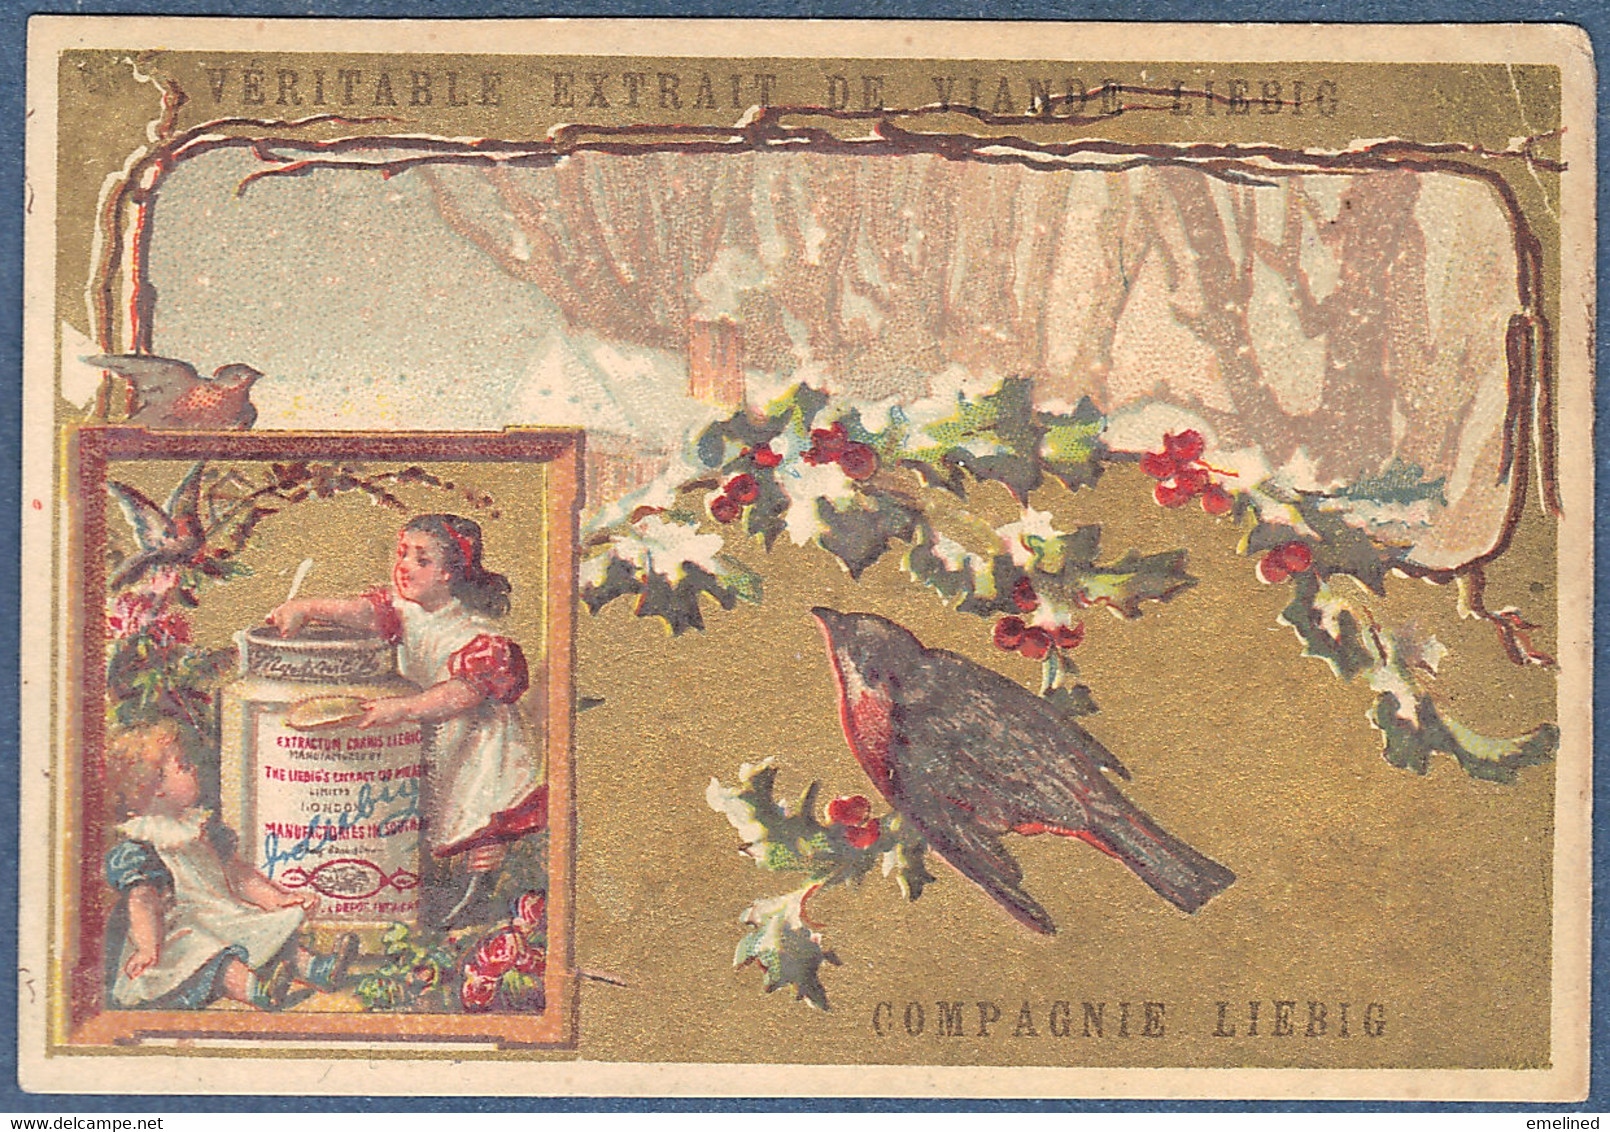 Chromo Liebig S101 Série Oiseaux Oiseau Rouge Gorge Pot Disproportionné Cadre à Gauche Avec Enfants Fillette Fillettes - Liebig